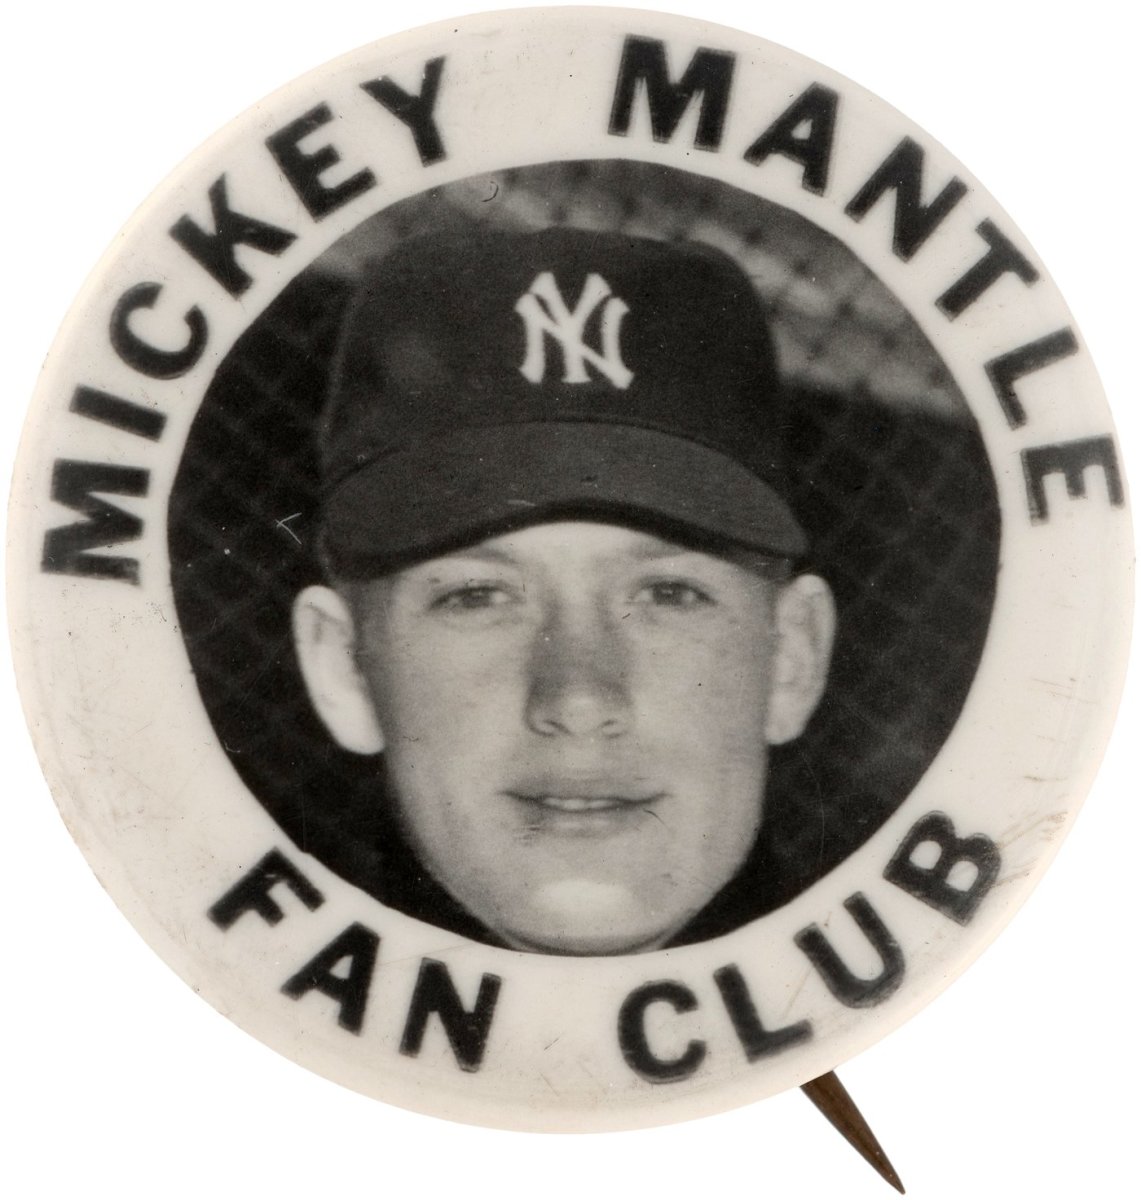 Mickey Mantle fan club pin.